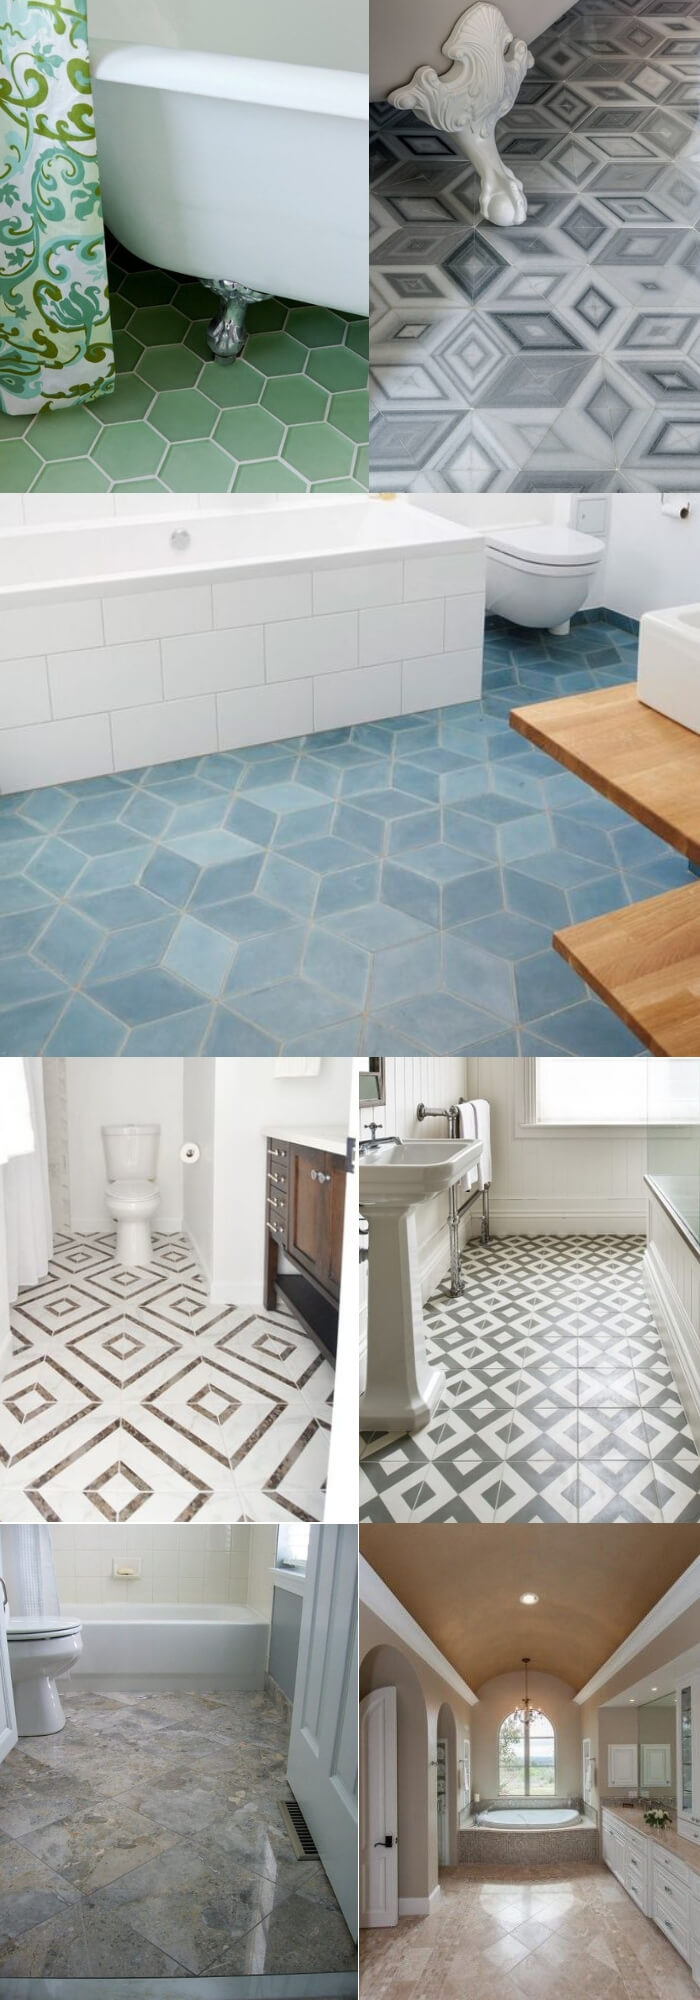 Diamond bathroom floor tile ideas